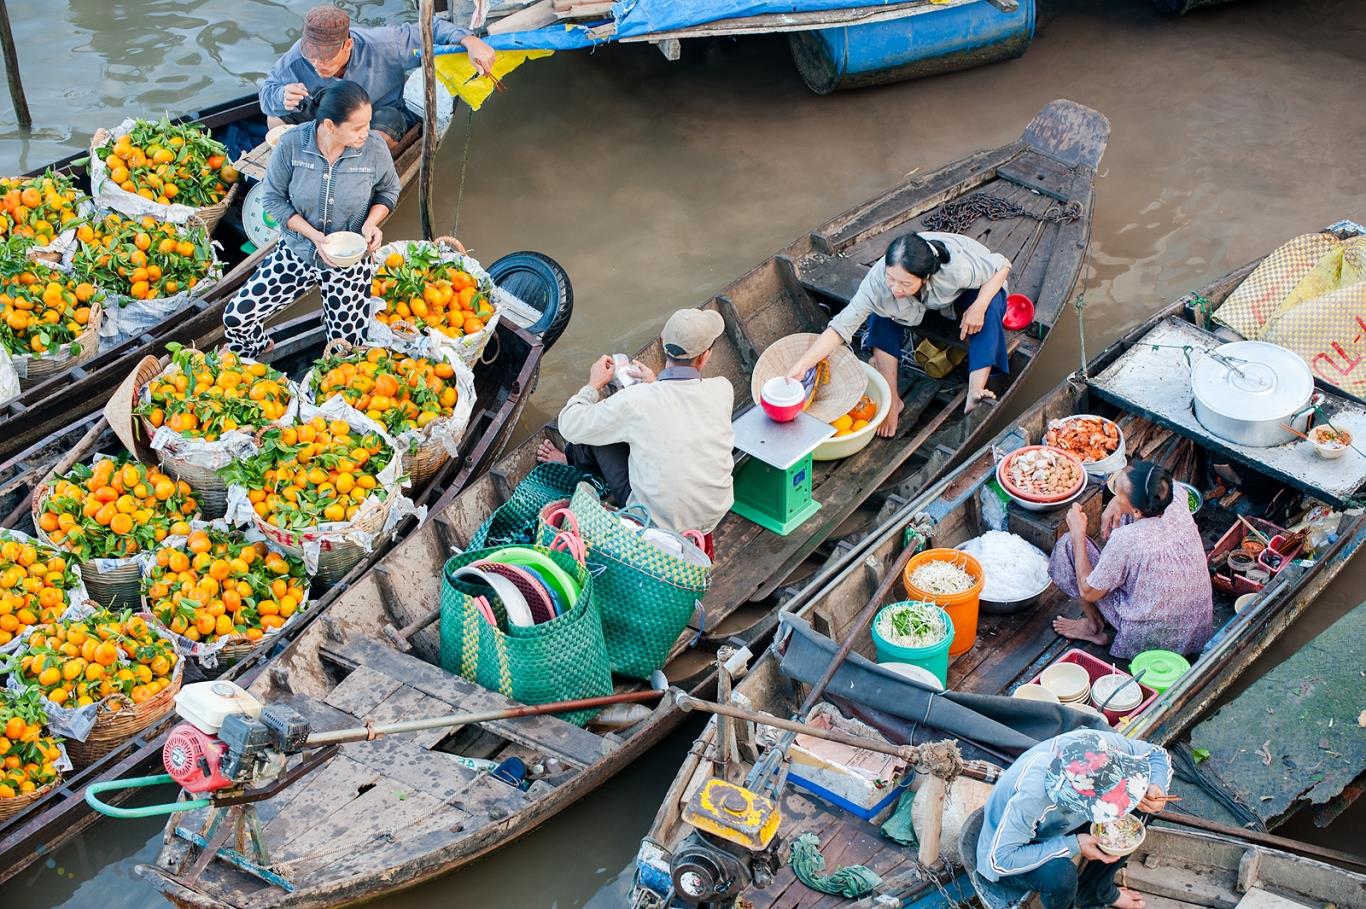 Chợ nổi Cái Bè có vị trí nằm ở đoạn sông Tiền Giang giáp giữa ba tỉnh Tiền Giang, Vĩnh Long và Bến Tre. 